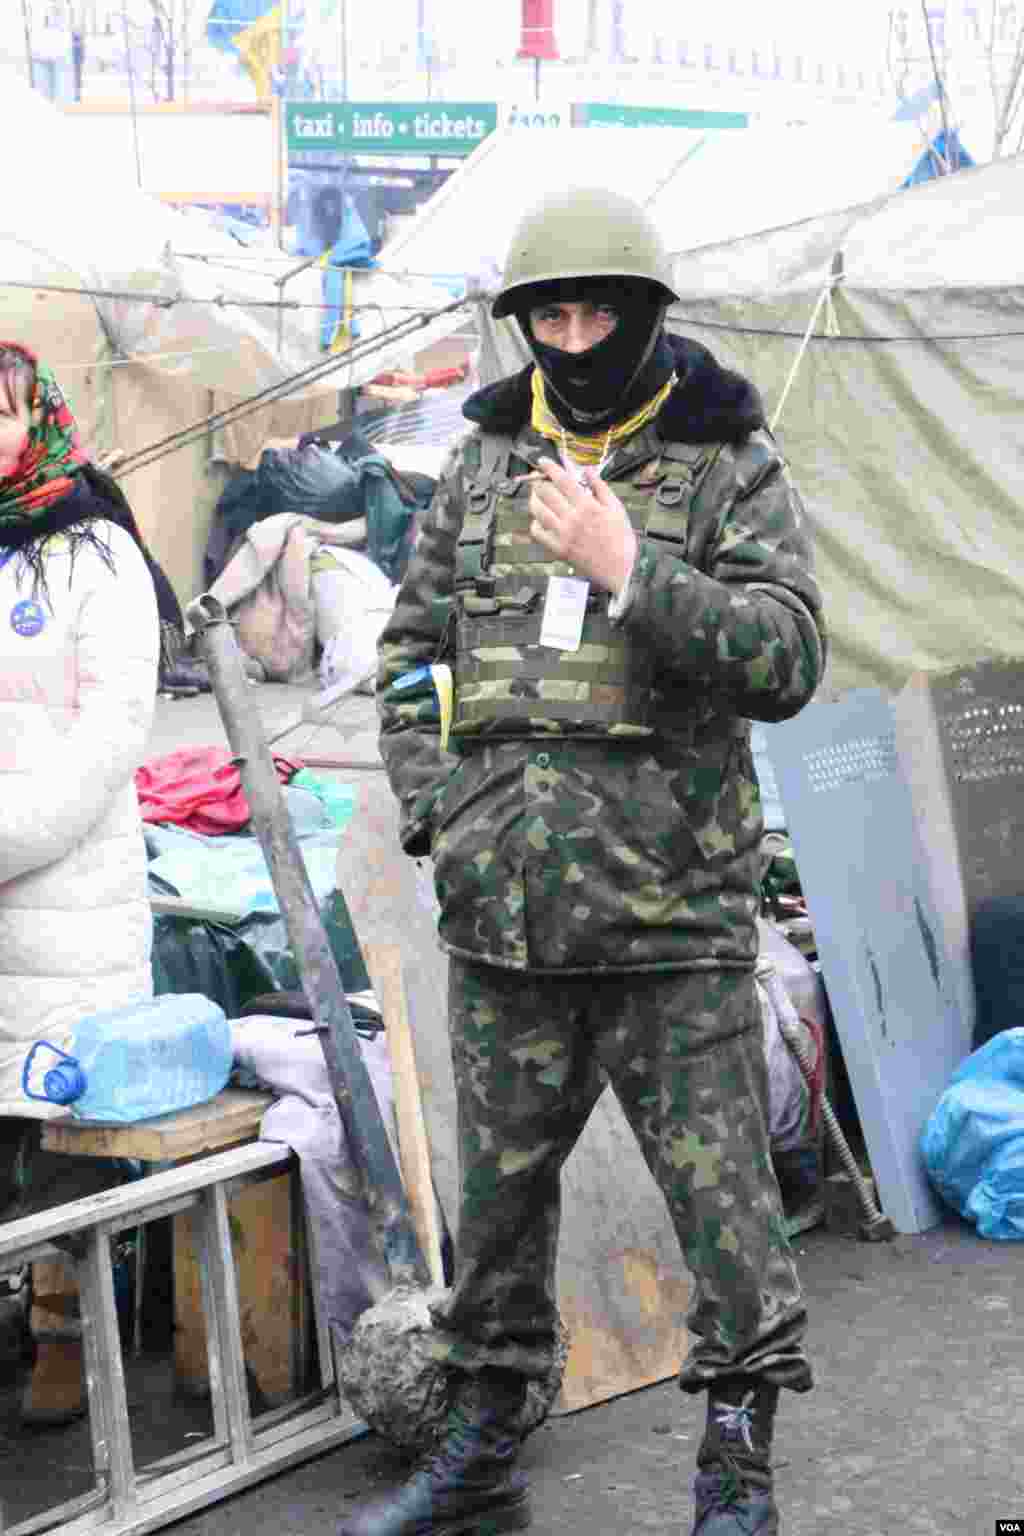 Перемирие между властью и оппозицией не затронуло количество представителей самообороны палаточного лагеря противников политики президента Виктора Януковича.